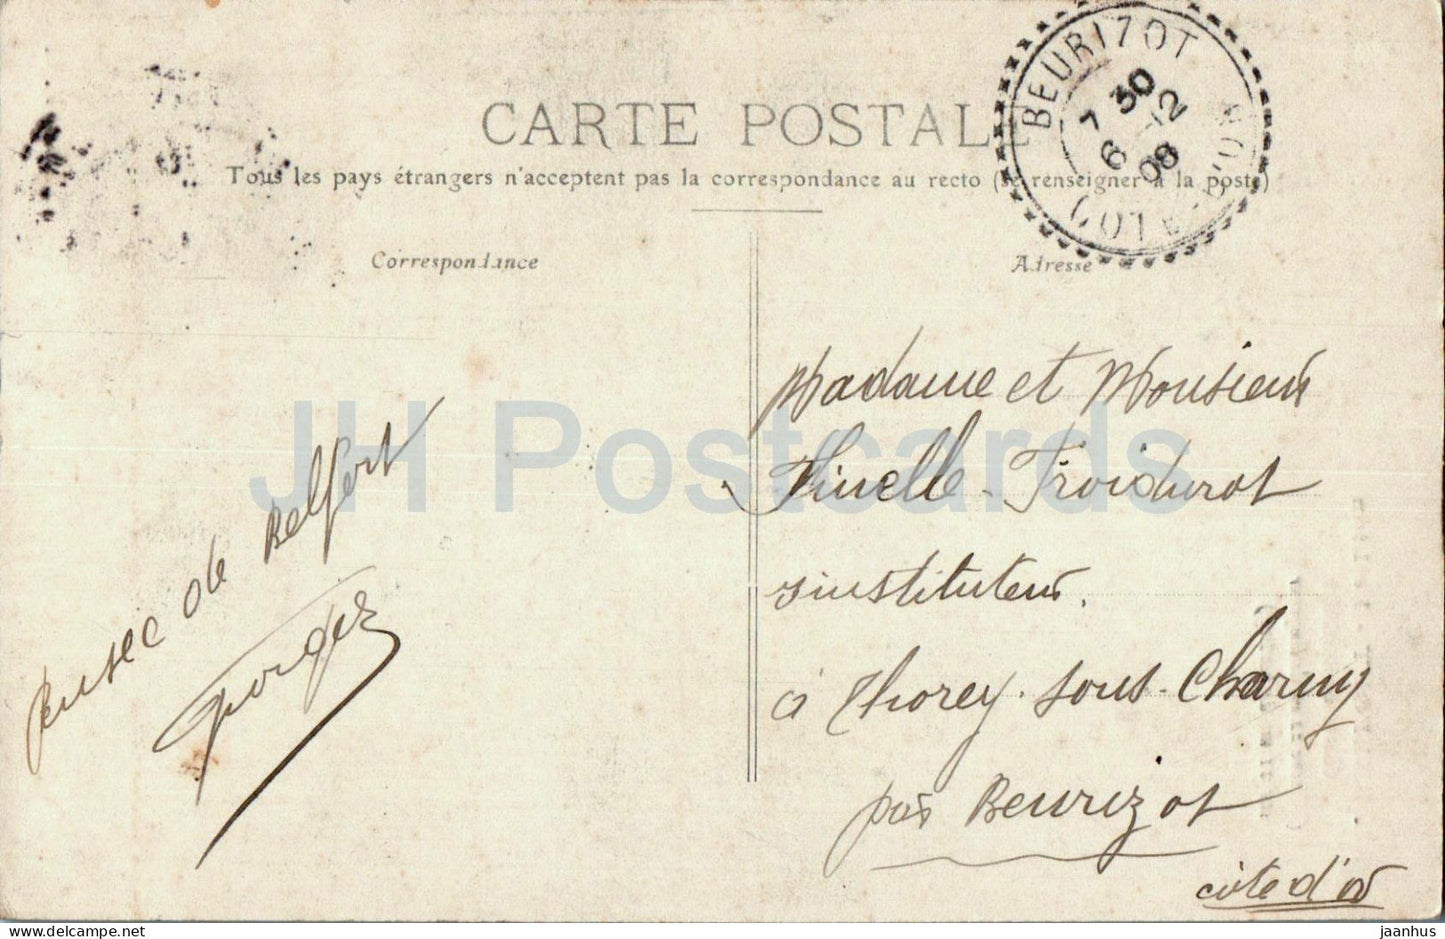 Belfort - Le Lion - Euvre de Bartholdi - Tiere - Löwe - 33 - alte Postkarte - 1908 - Frankreich - gebraucht